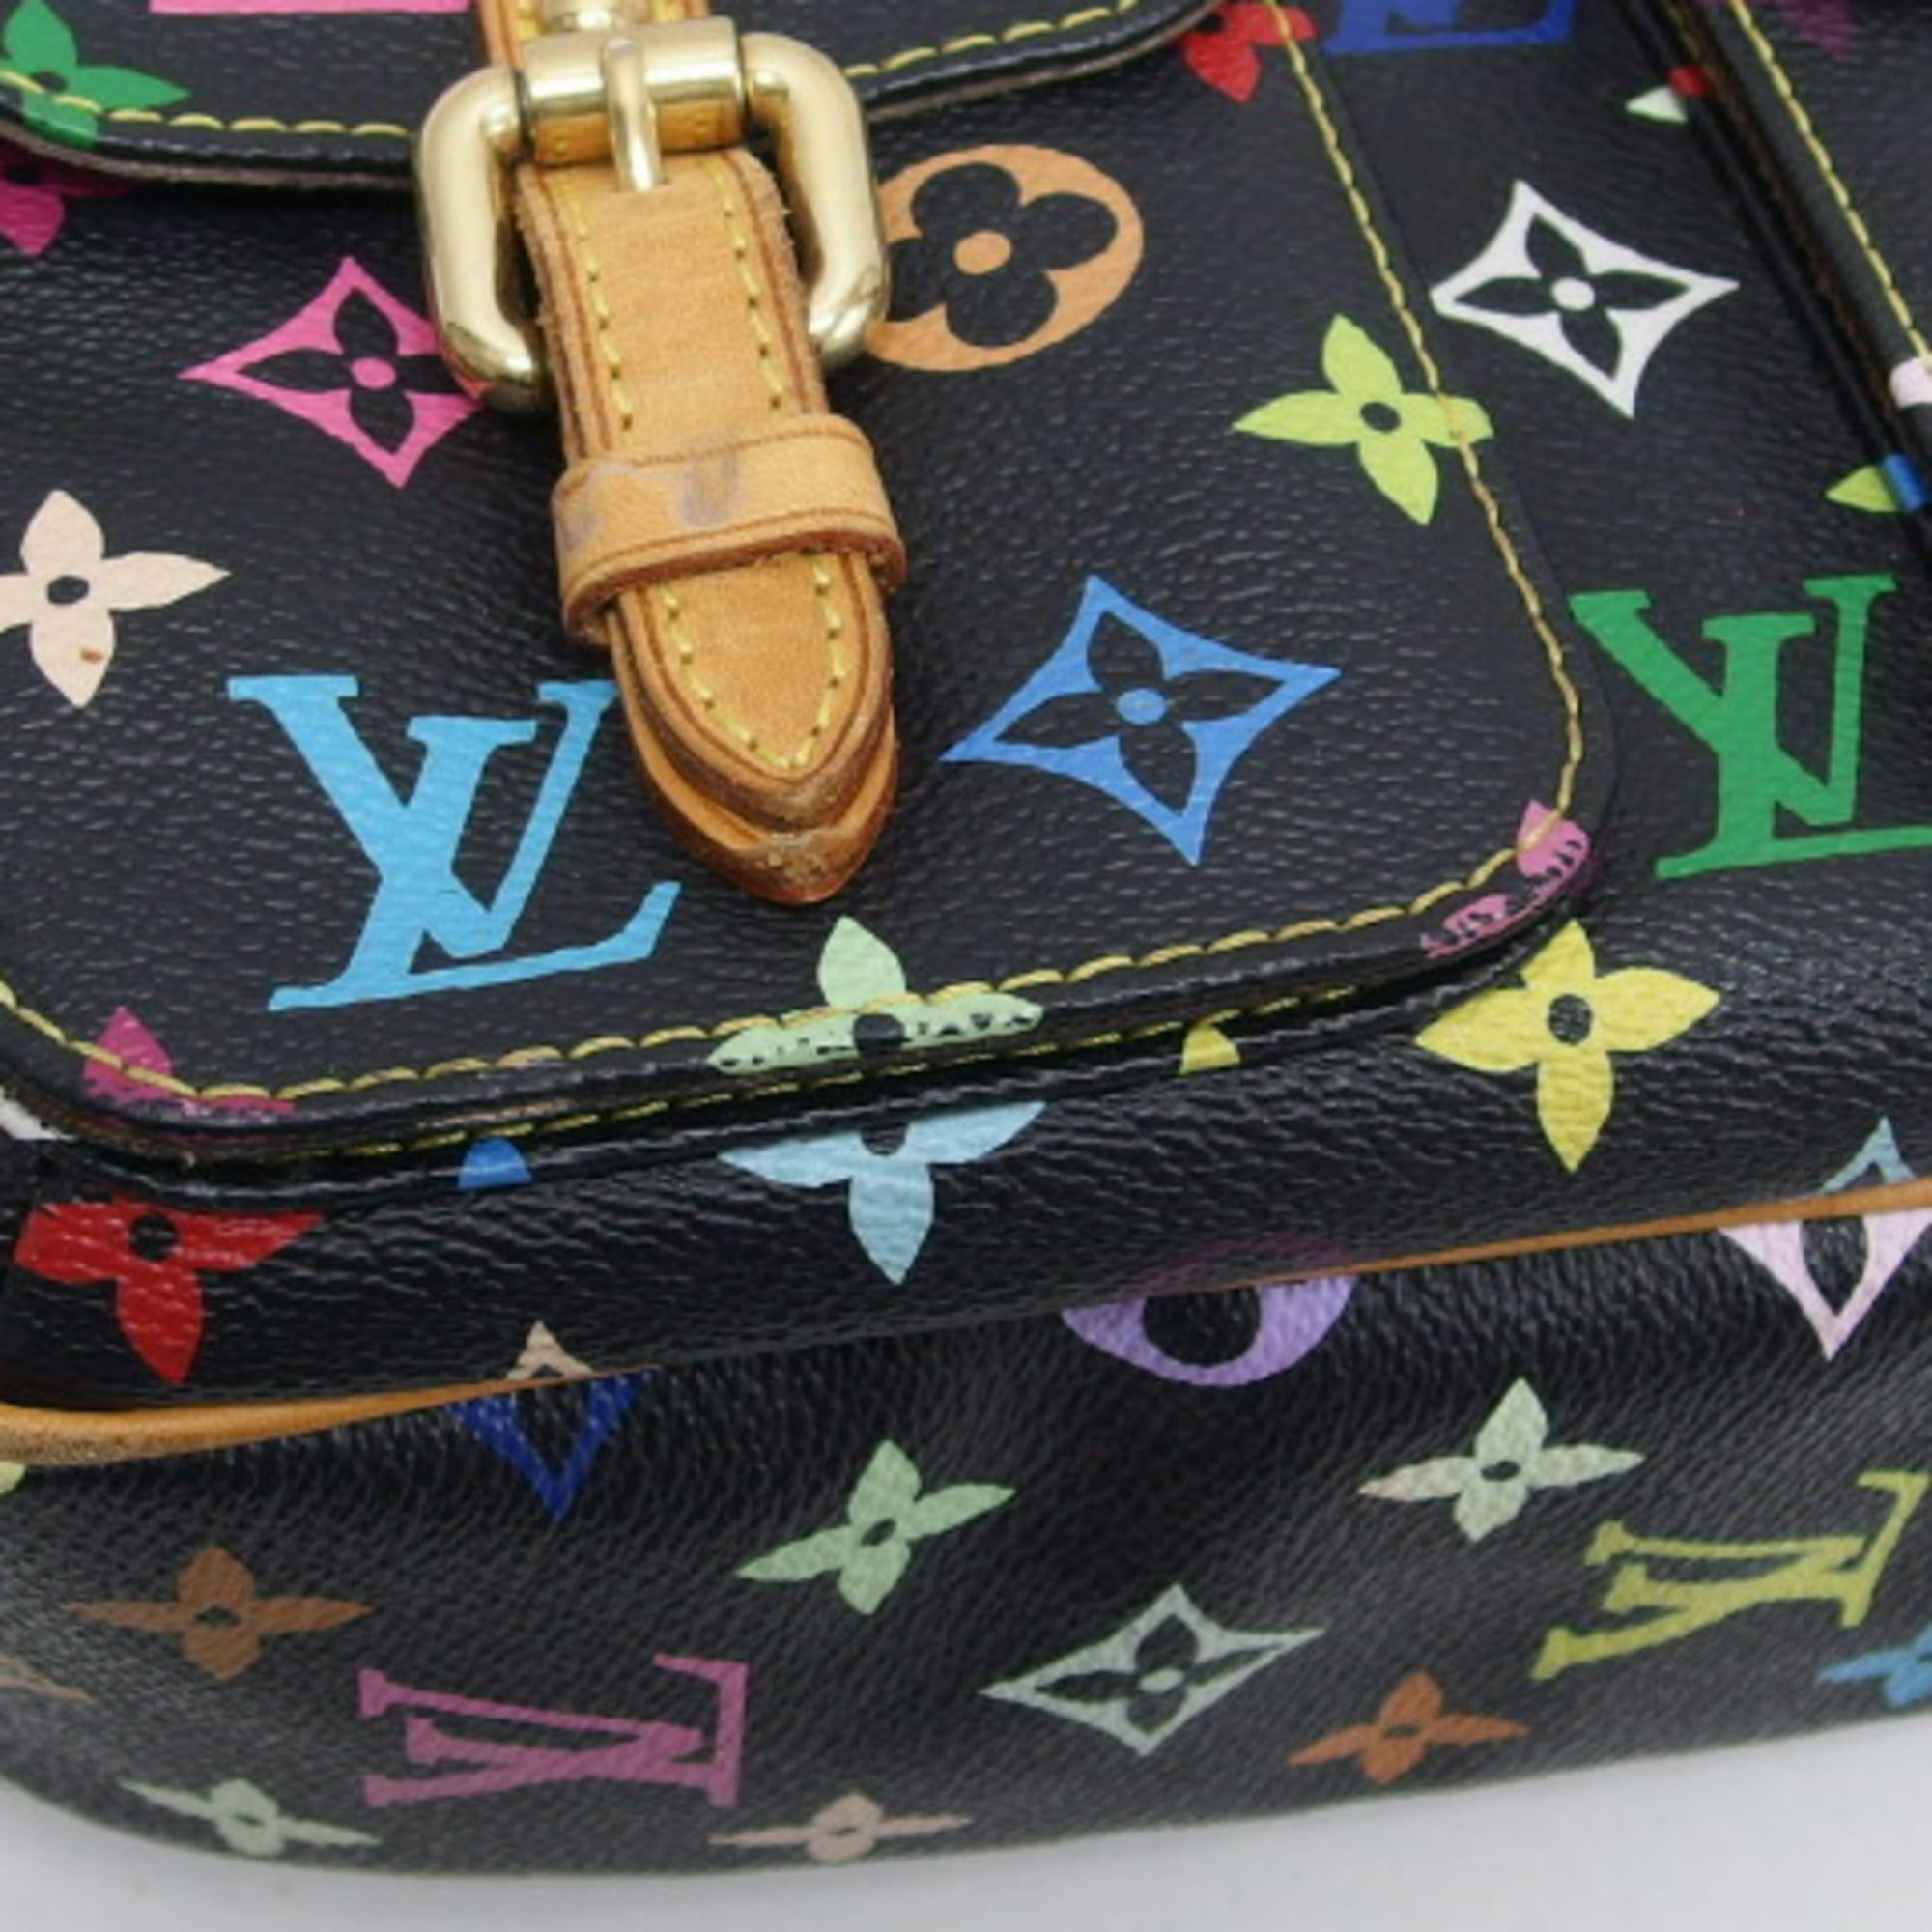 Louis Vuitton 2000s Multicolor Lodge Black Handbag · INTO